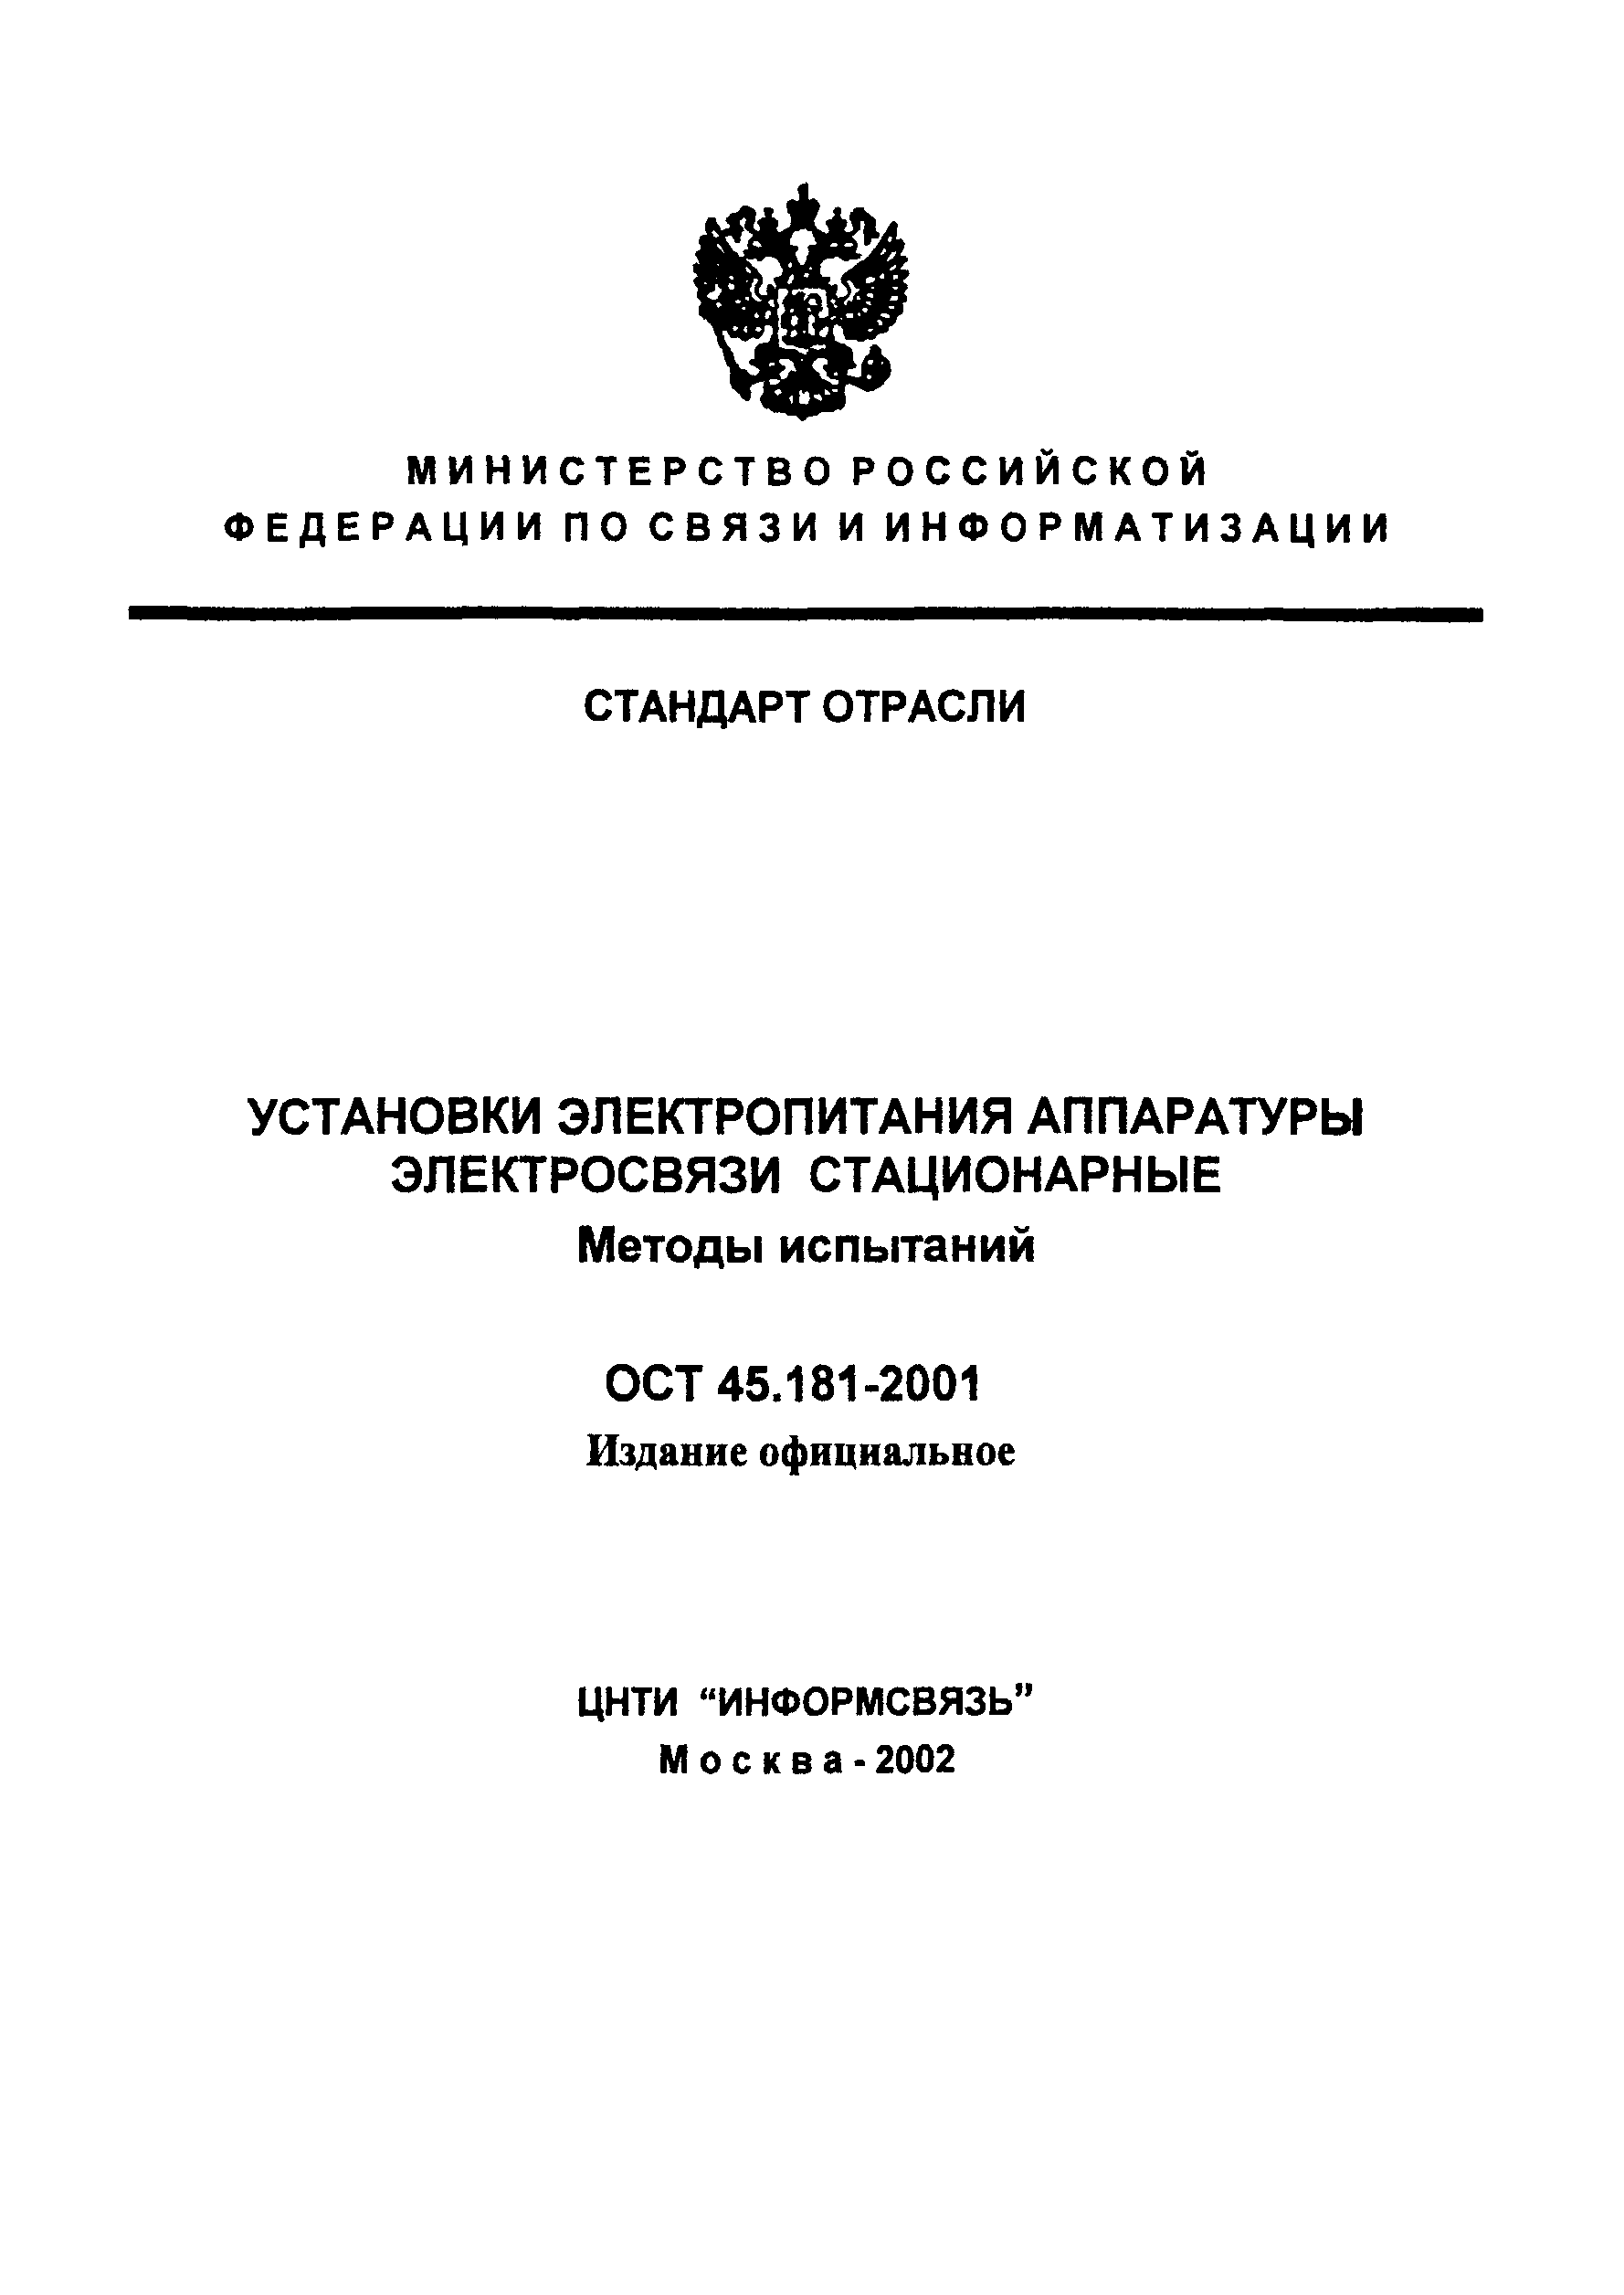 ОСТ 45.181-2001